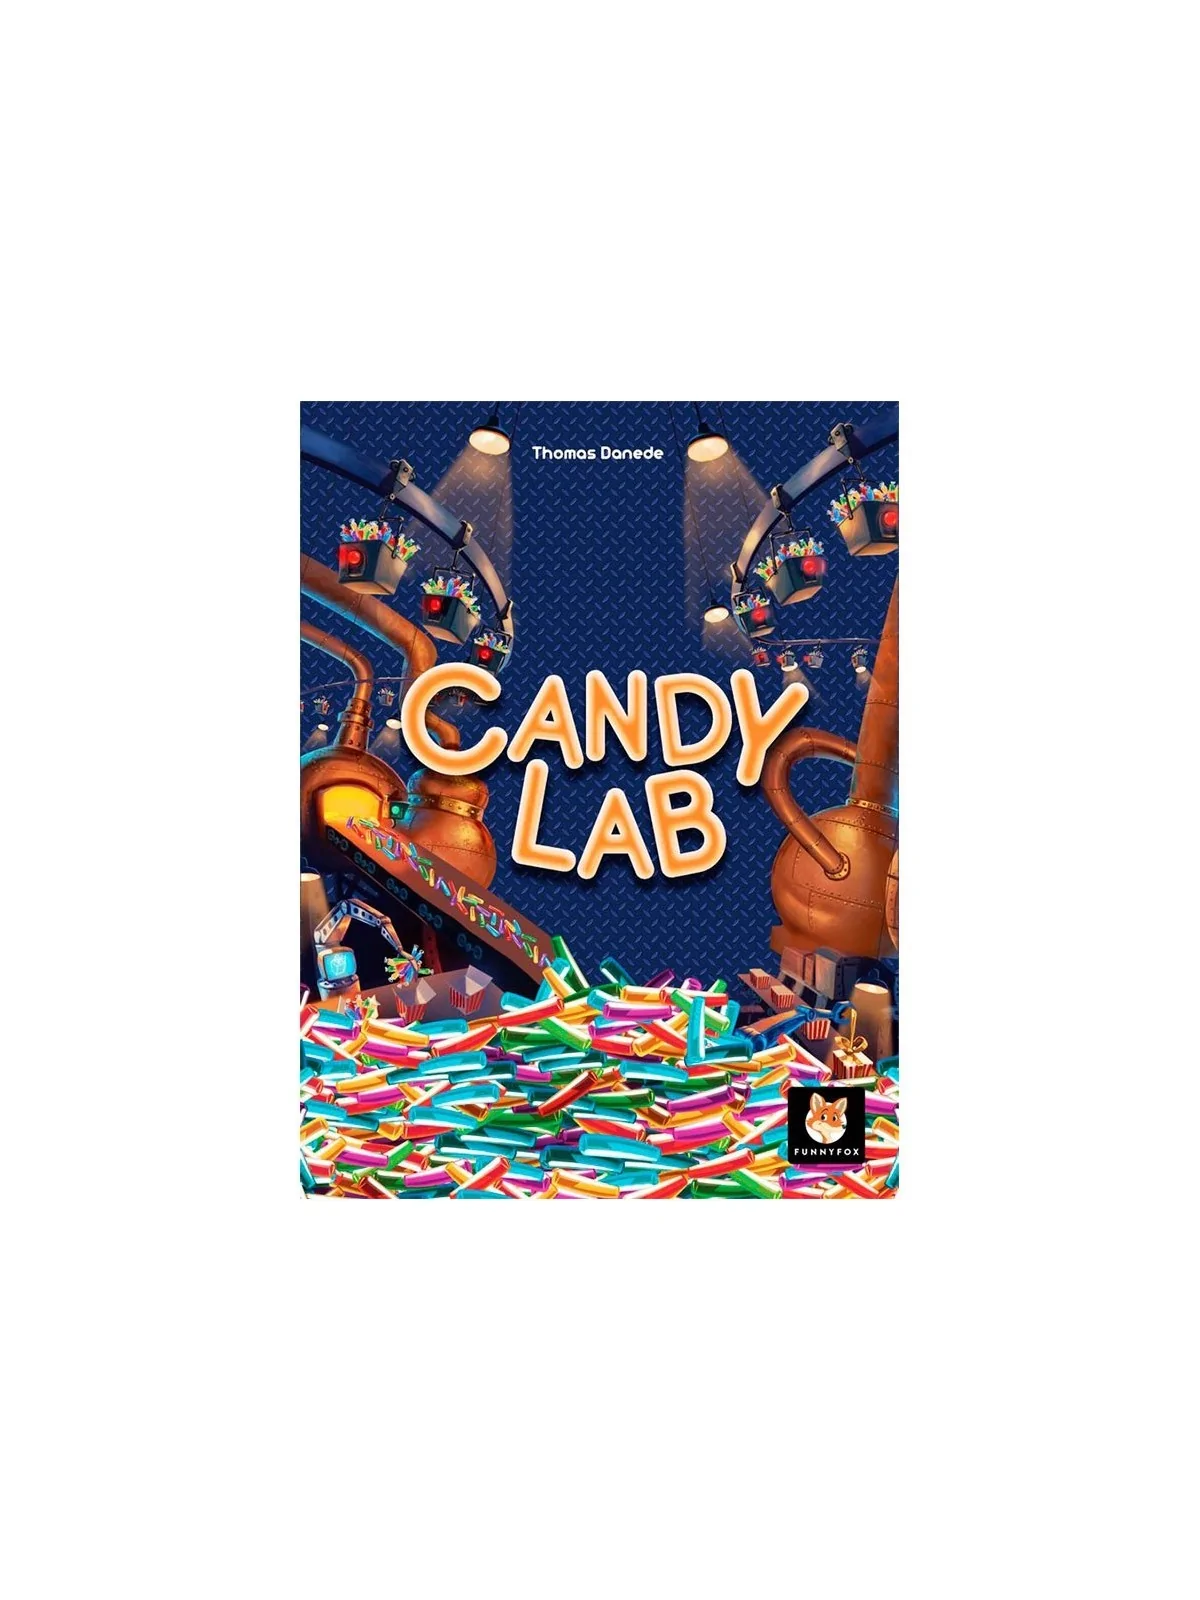 Comprar Candy Lab barato al mejor precio 19,76 € de Arrakis Games